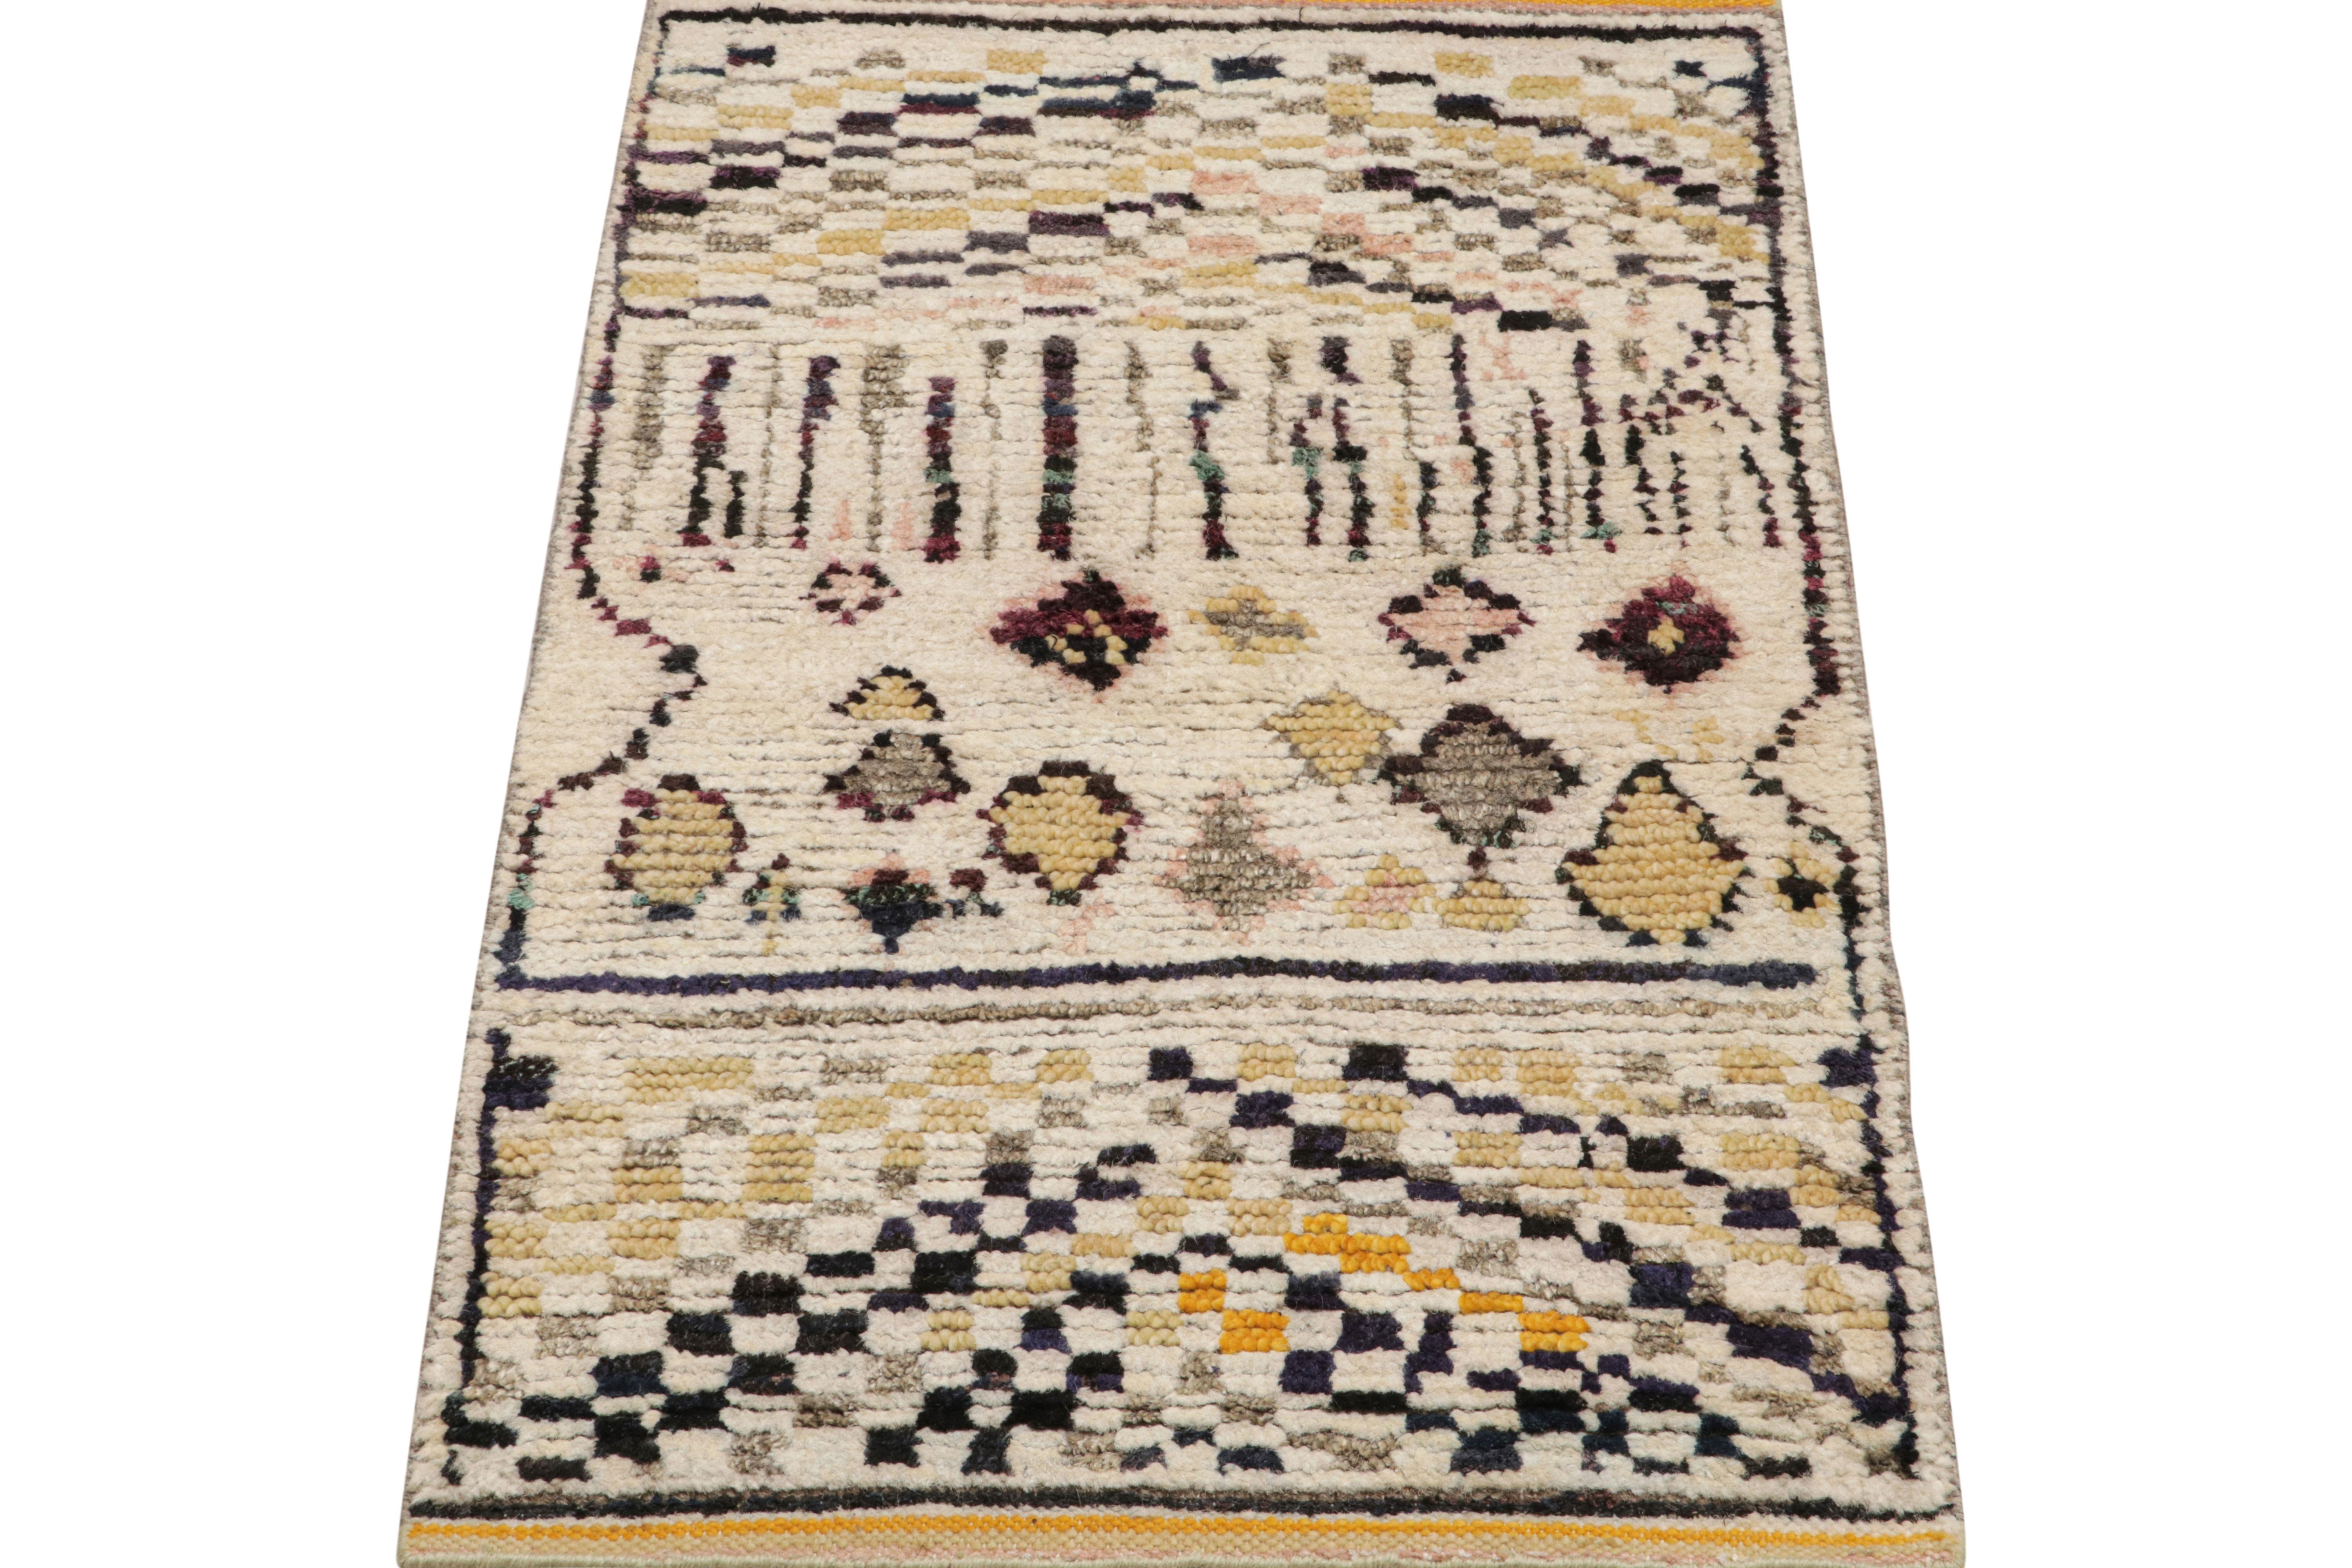 Noué à la main en laine et en soie, ce tapis marocain 2x3 présente une texture nervurée inspirée de pièces de style boucherouite et de textiles similaires dans le style tribal berbère primitiviste. 

Sur le Design : 

Les connaisseurs peuvent